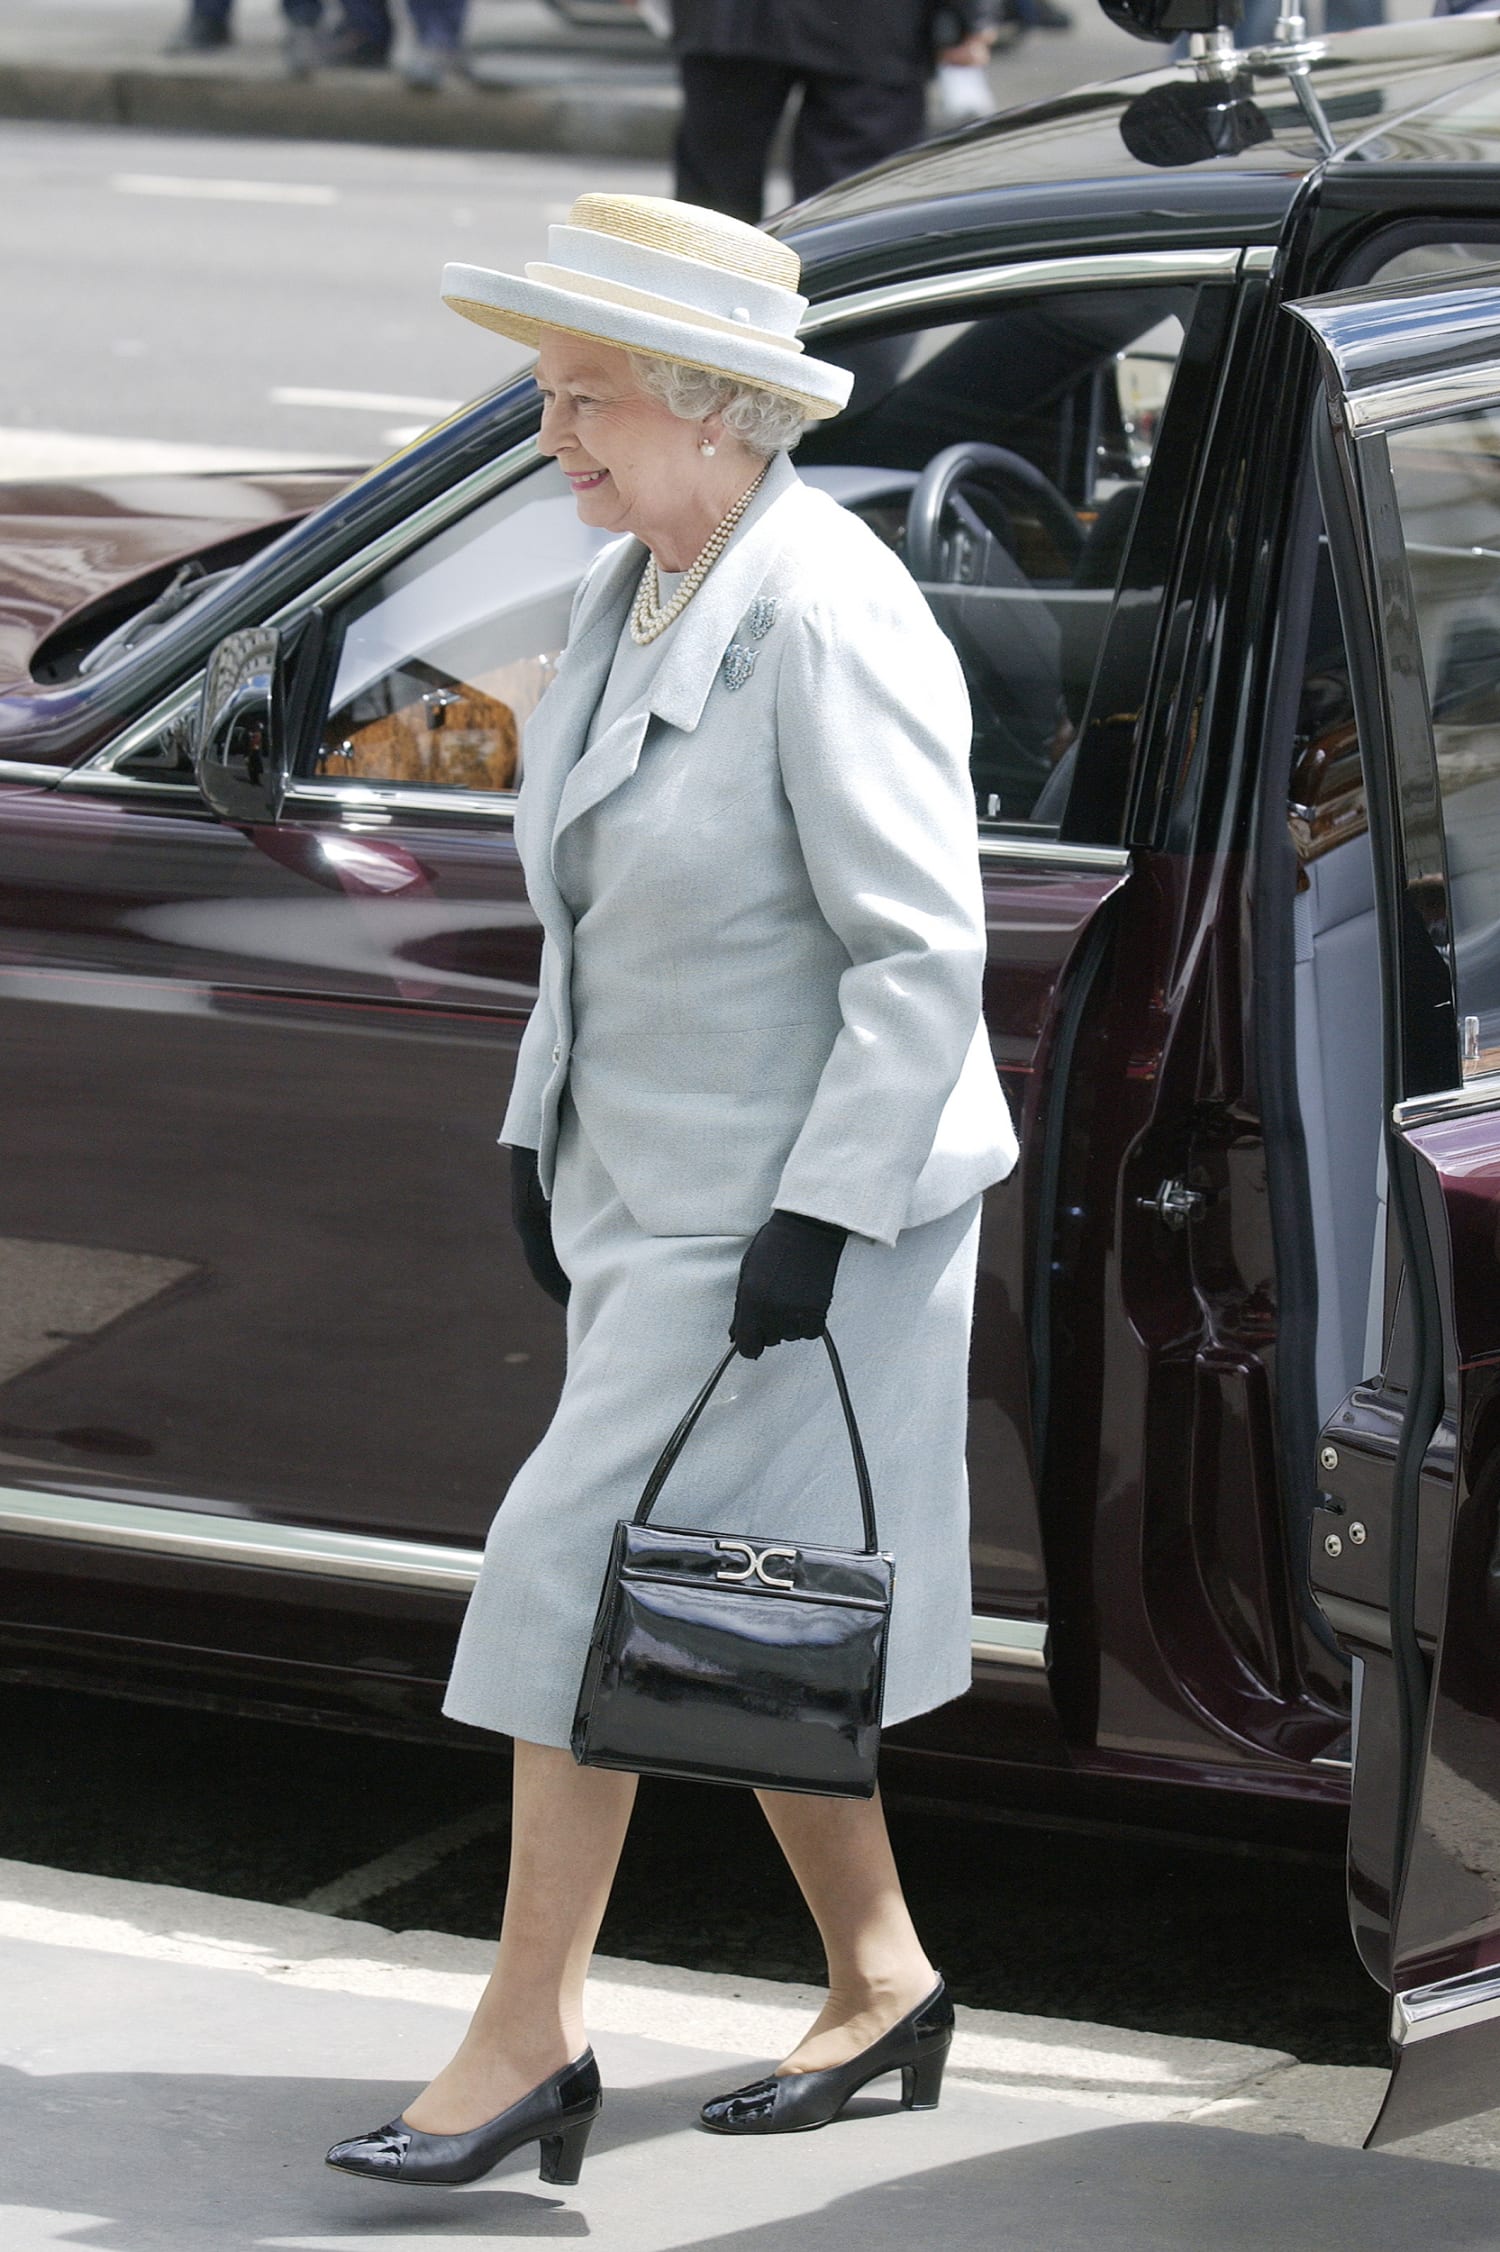 Queen Elizabeth's Favorite Handbag Brand is Launer - The Queen's